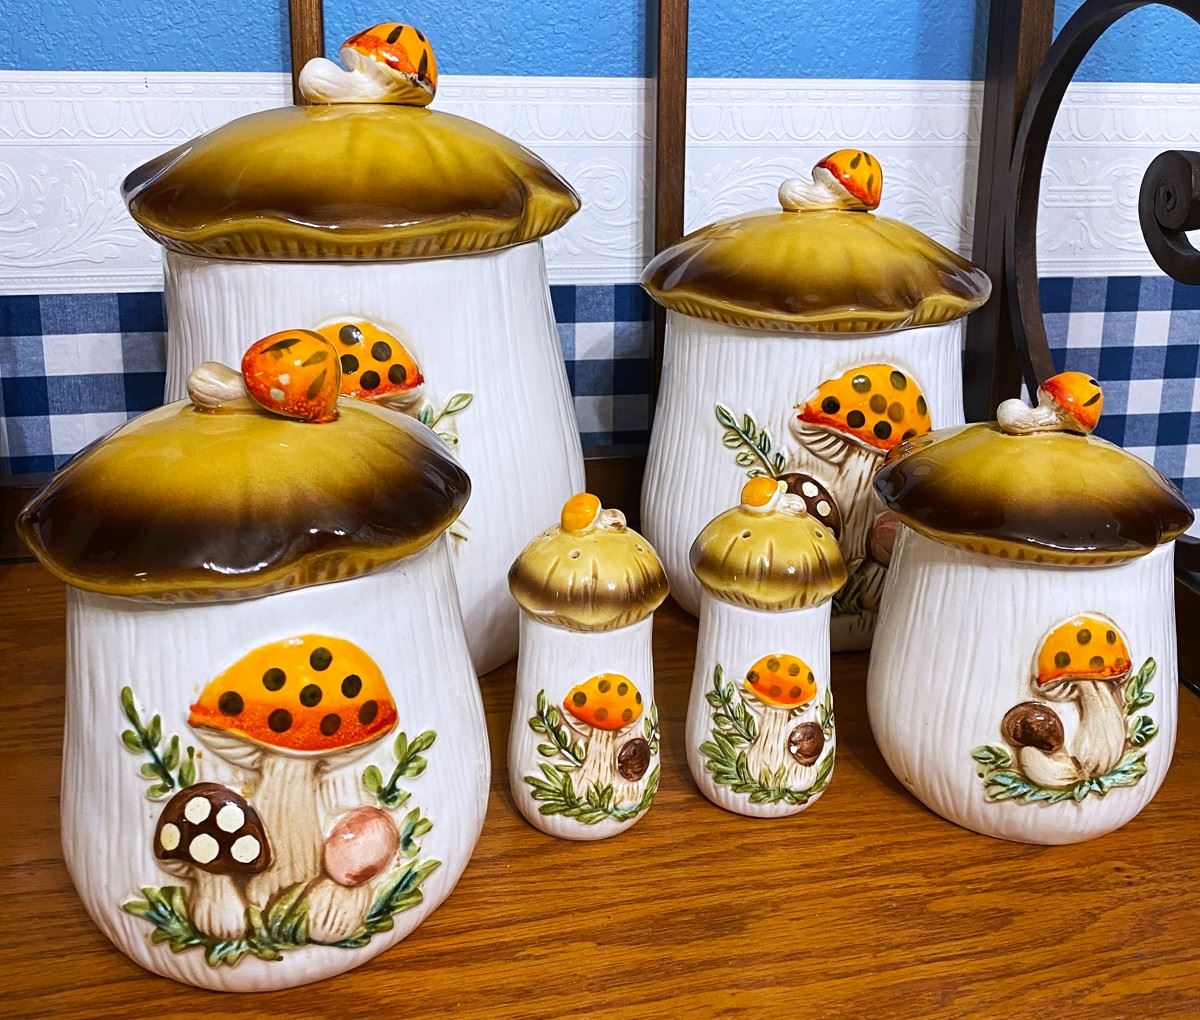 Sold at Auction: Vintage 1976 Sears Roebuck Merry Mushroom Tea Pot